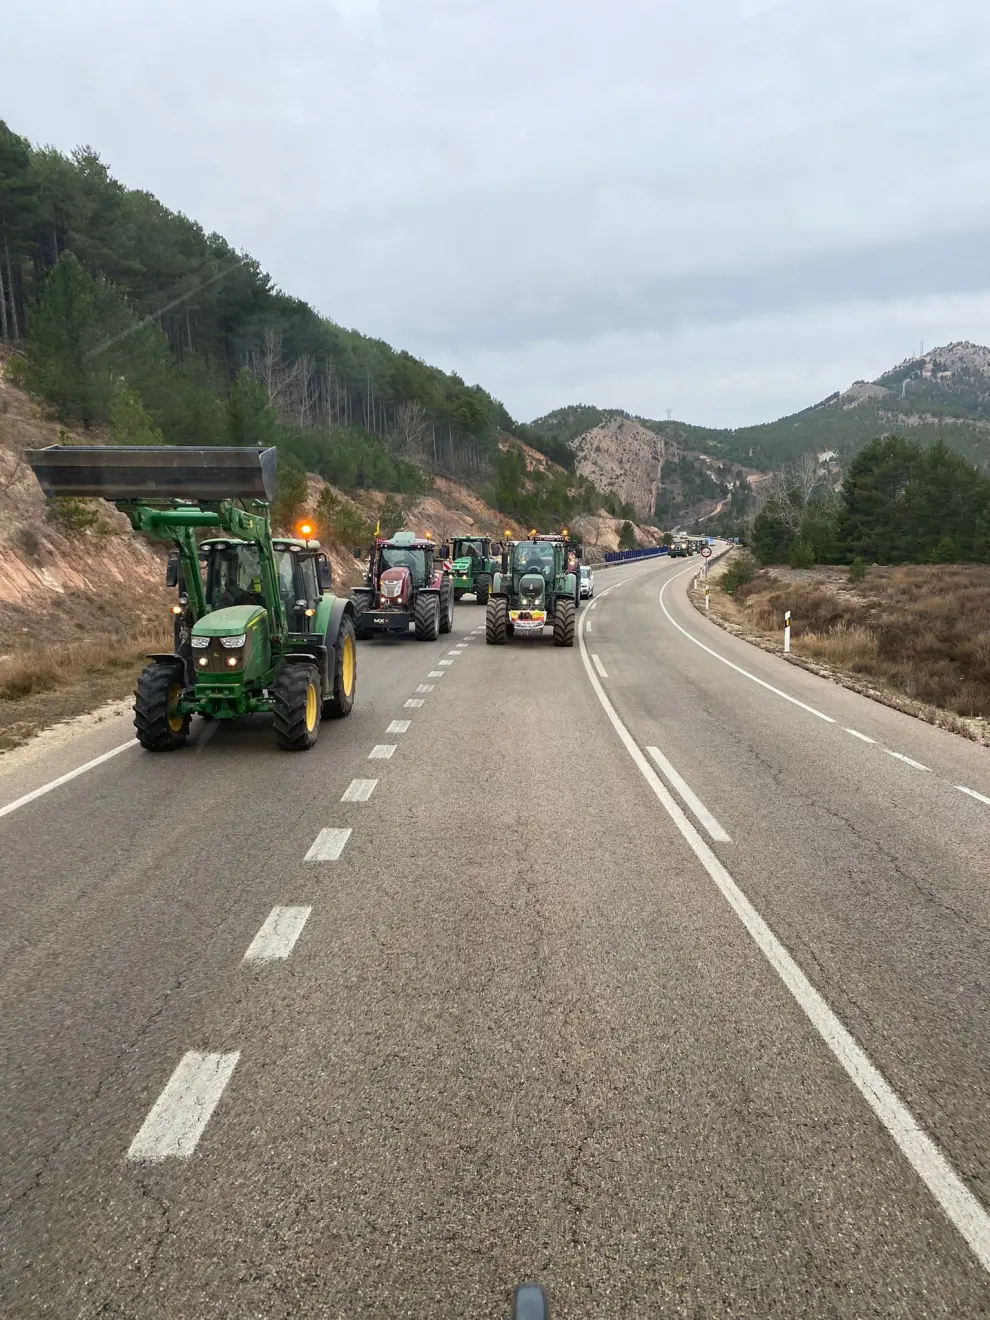 Los agricultores se movilizan en el municipio de Muniesa en Teruel.